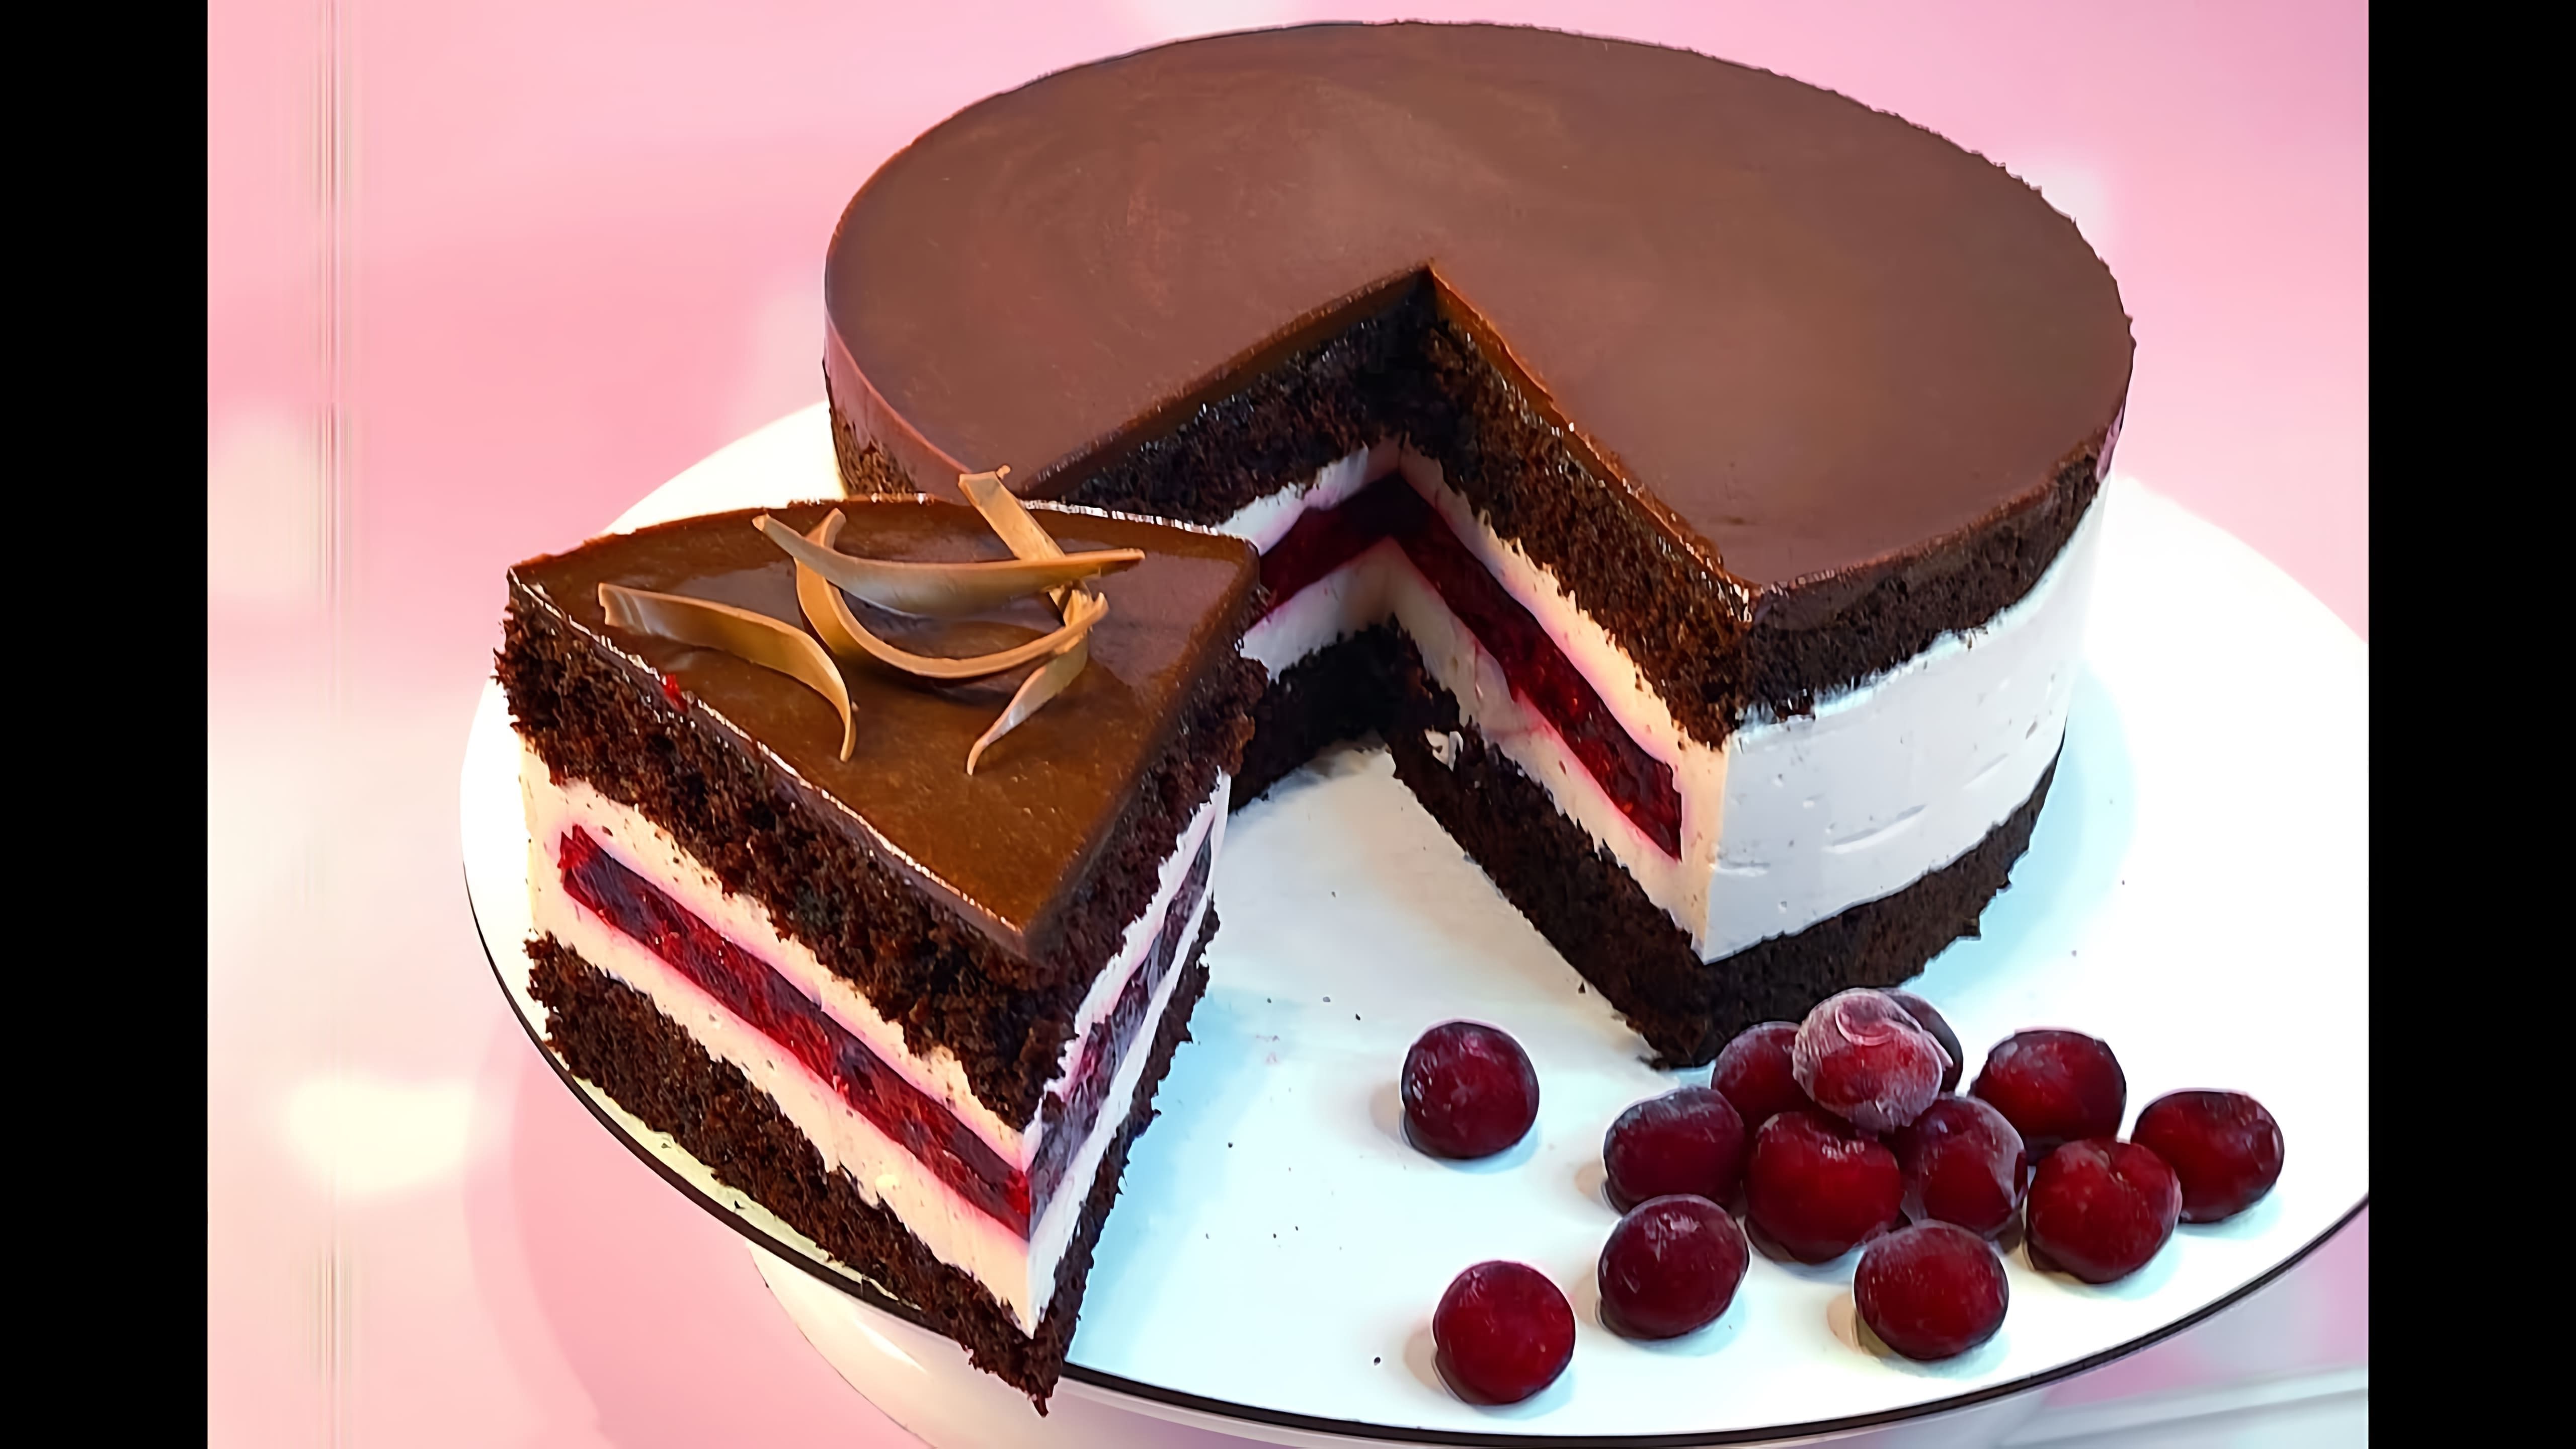 В этом видео демонстрируется процесс приготовления летнего десерта - торта с вишневыми прослойками и шоколадной зеркальной глазурью